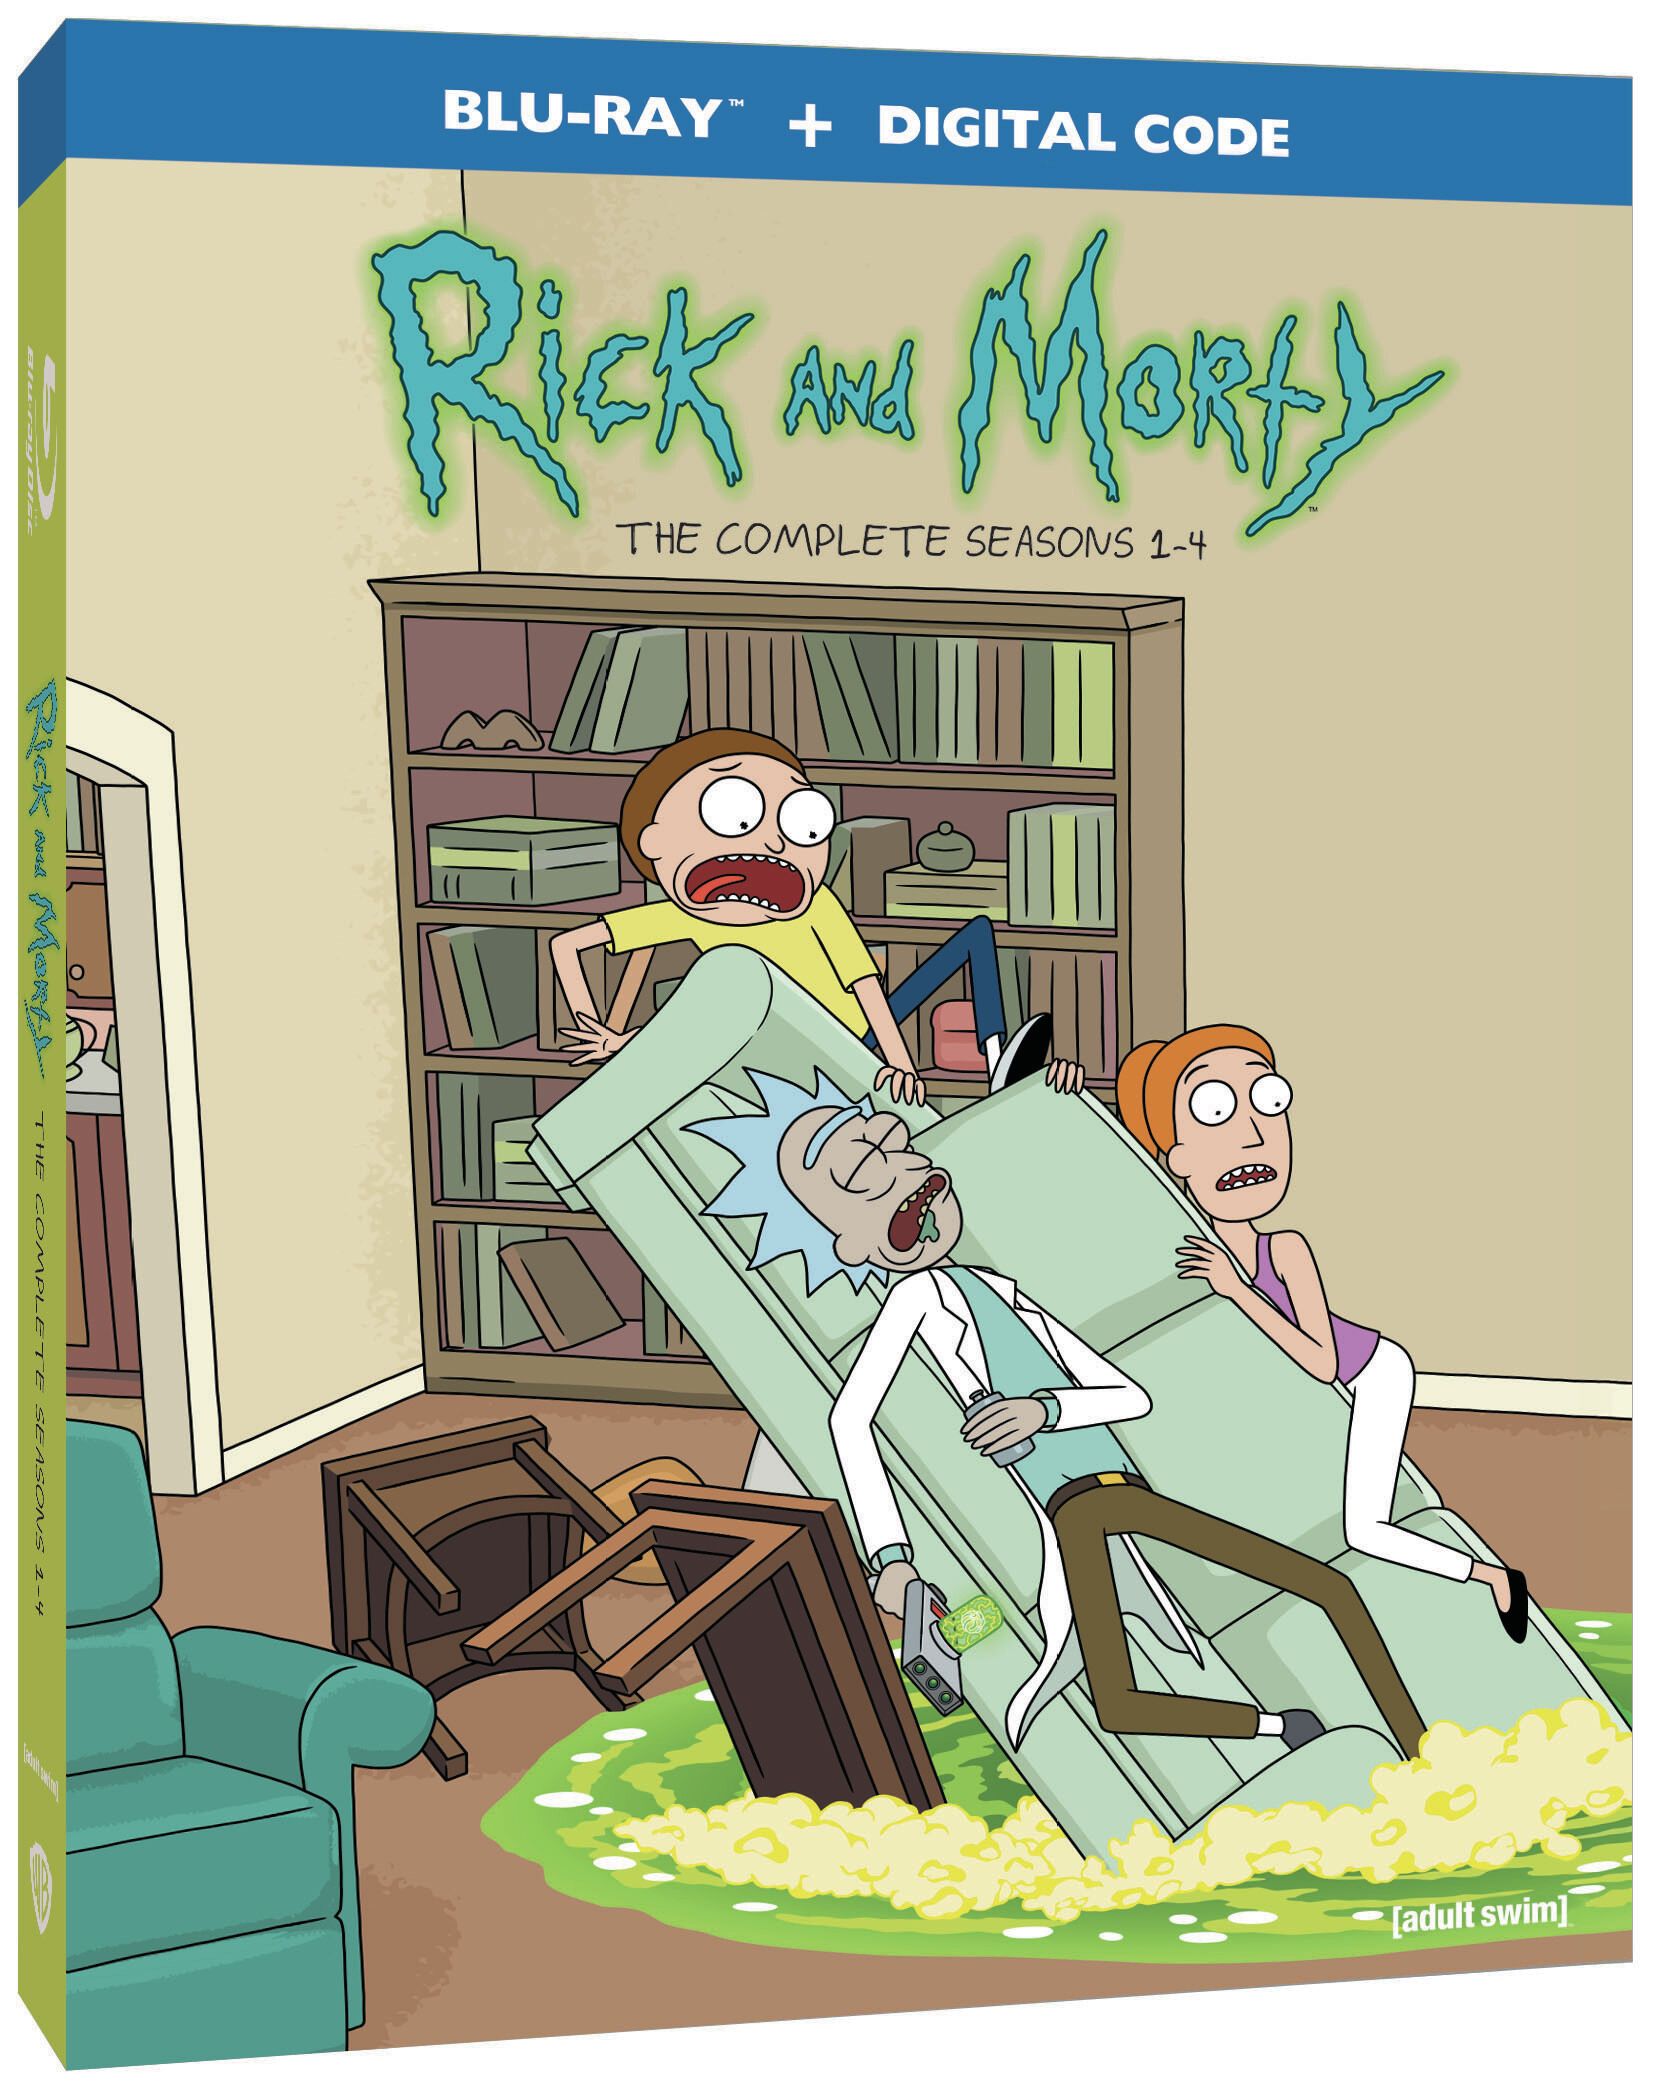 Rick and Morty kondigt Blu-ray releasedatum aan voor seizoen 1-4